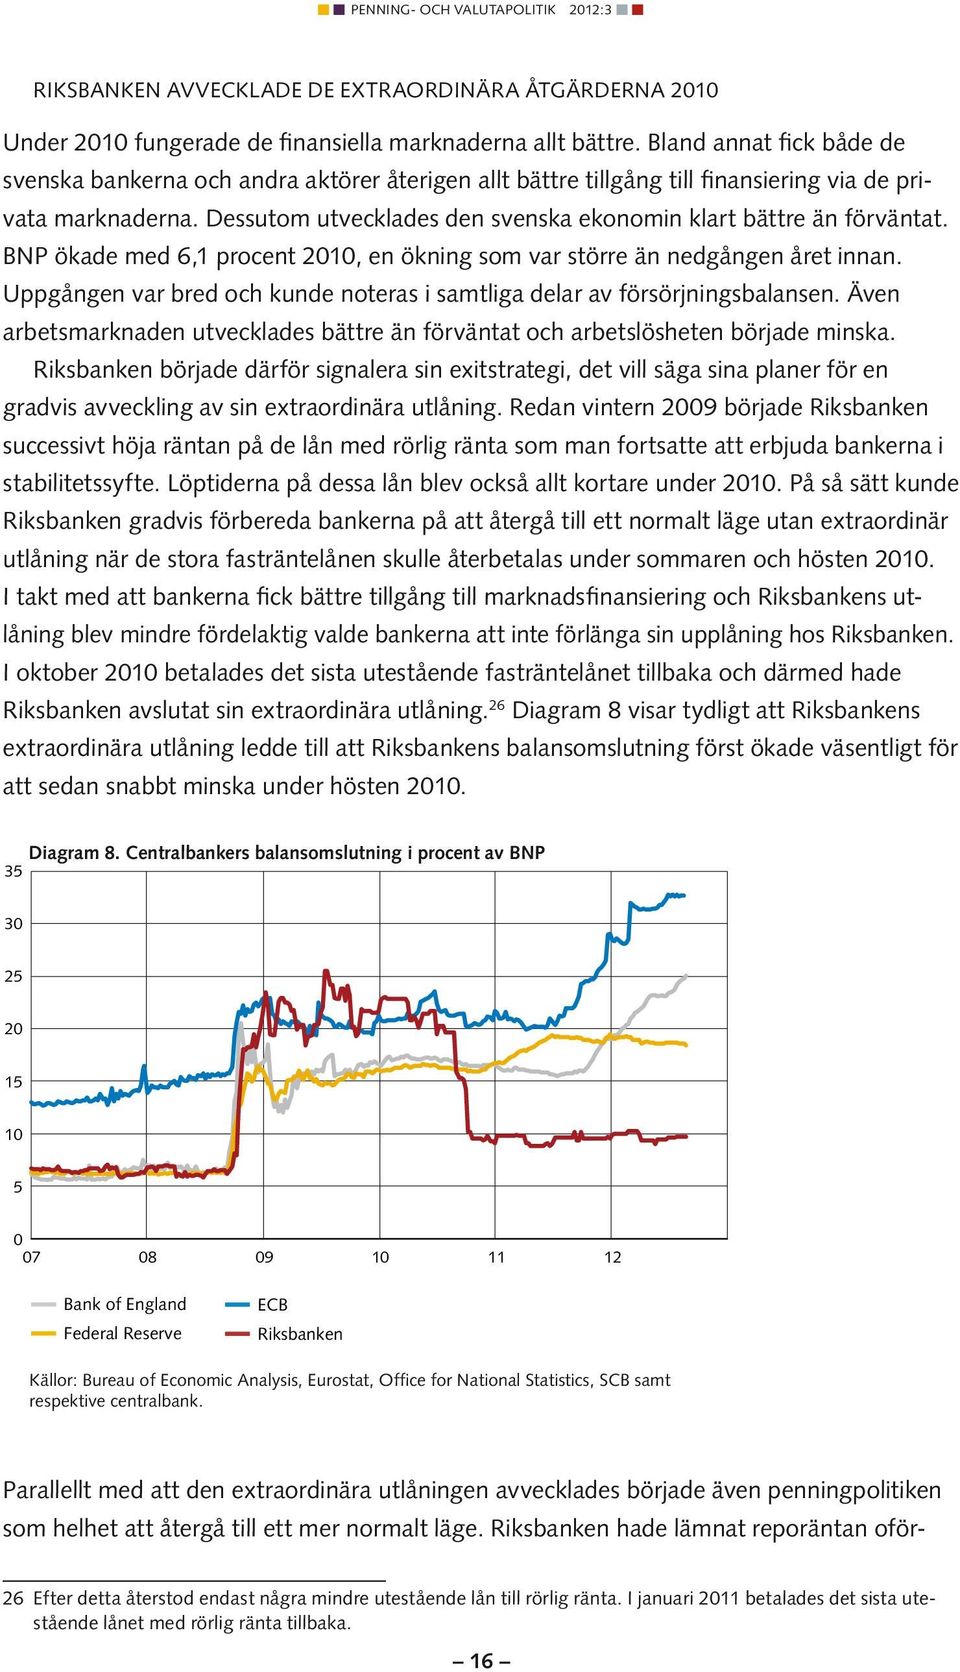 Dessutom utvecklades den svenska ekonomin klart bättre än förväntat. BNP ökade med 6,1 procent 2010, en ökning som var större än nedgången året innan.